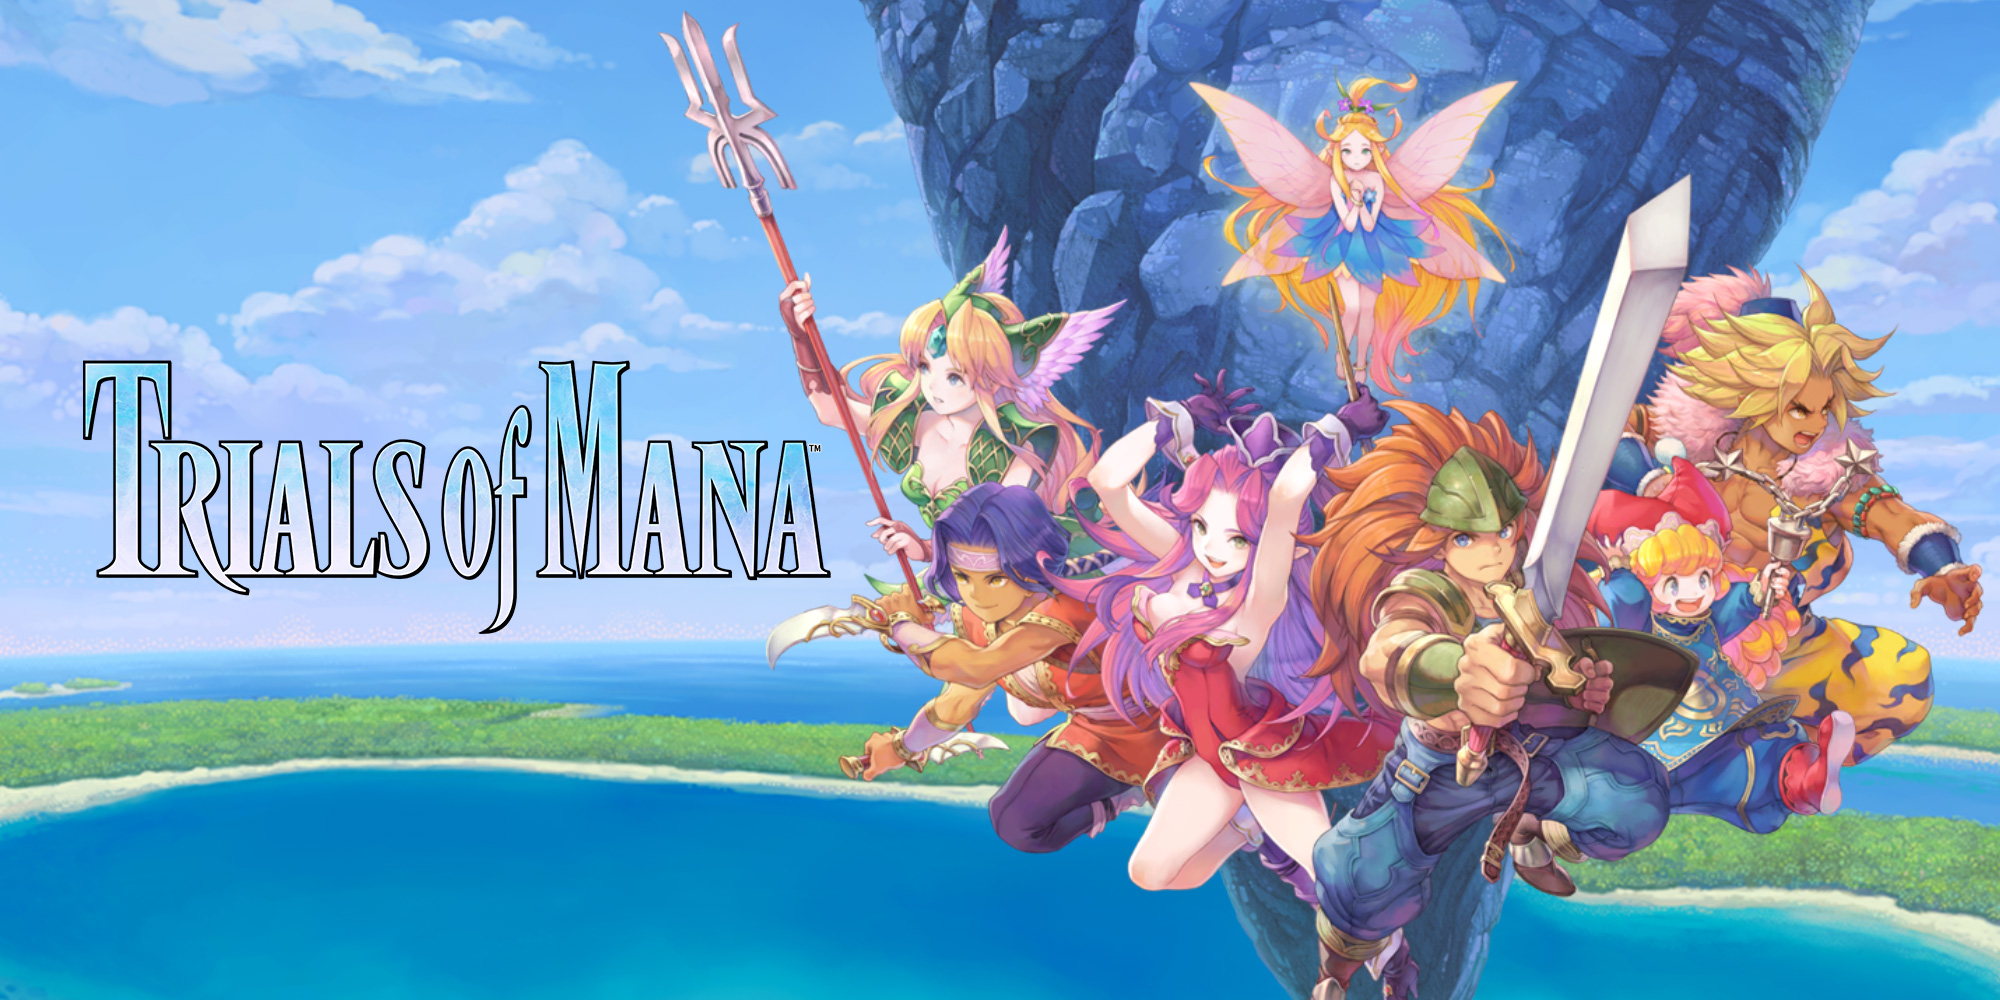 Descubrid la magia de TRIALS of MANA con Nintendo Treehouse: Live. ¡El juego estará disponible para Nintendo Switch en 2020!